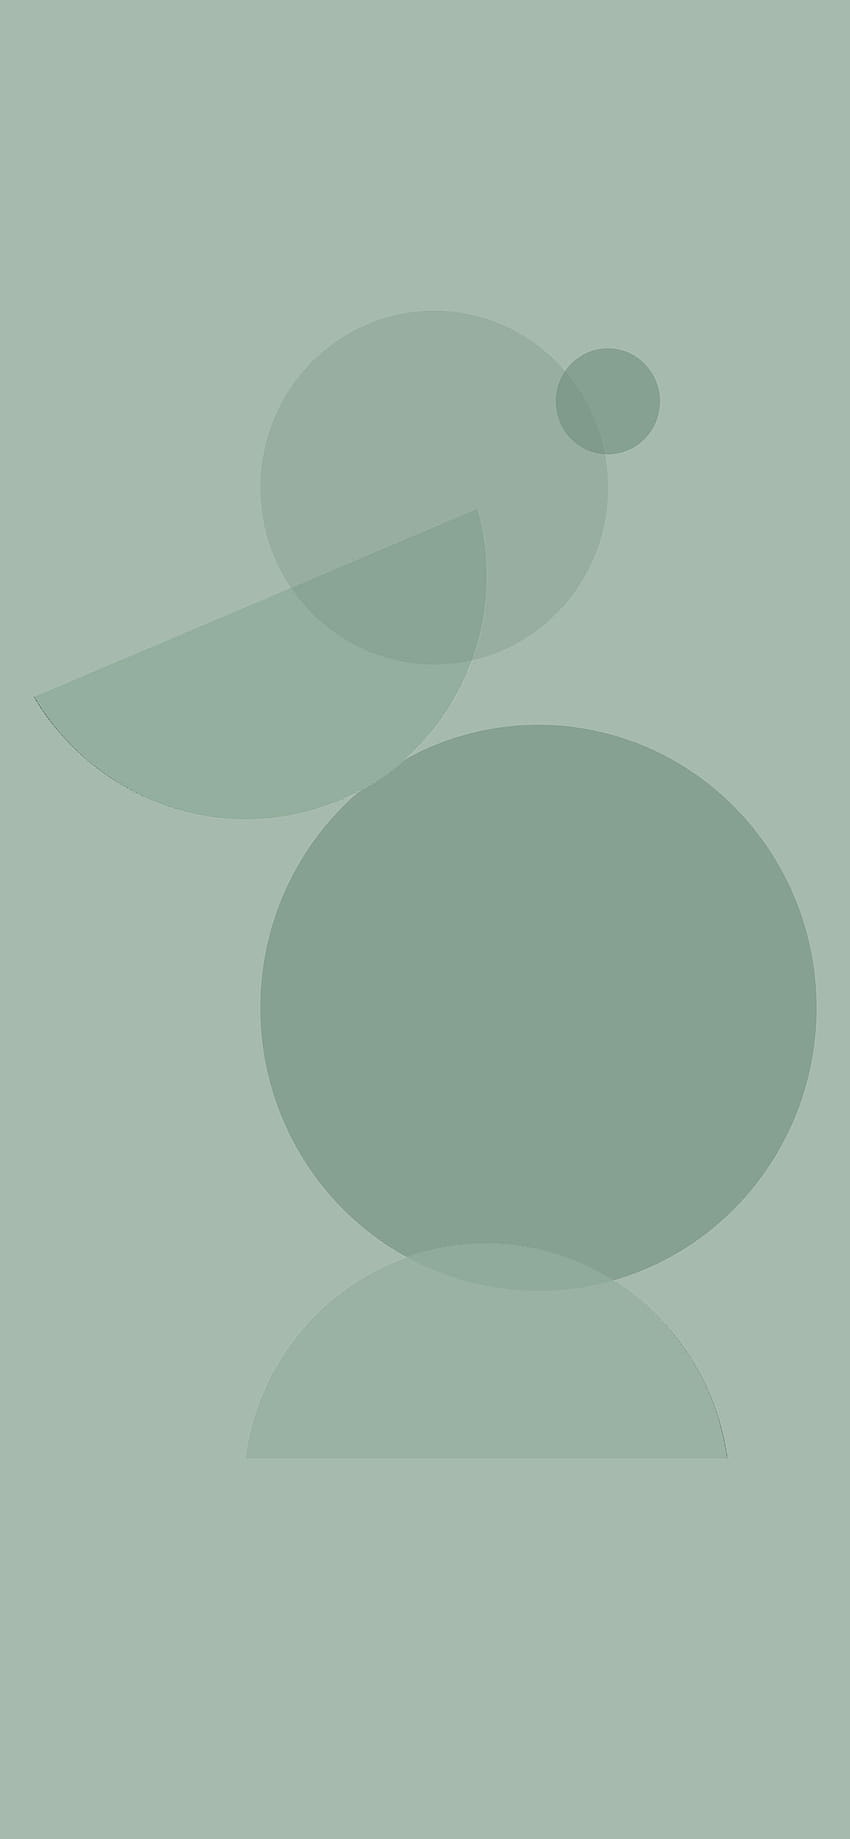 35 Estética verde salvia: s abstractos modernos iPhone, estética salvia fondo de pantalla del teléfono